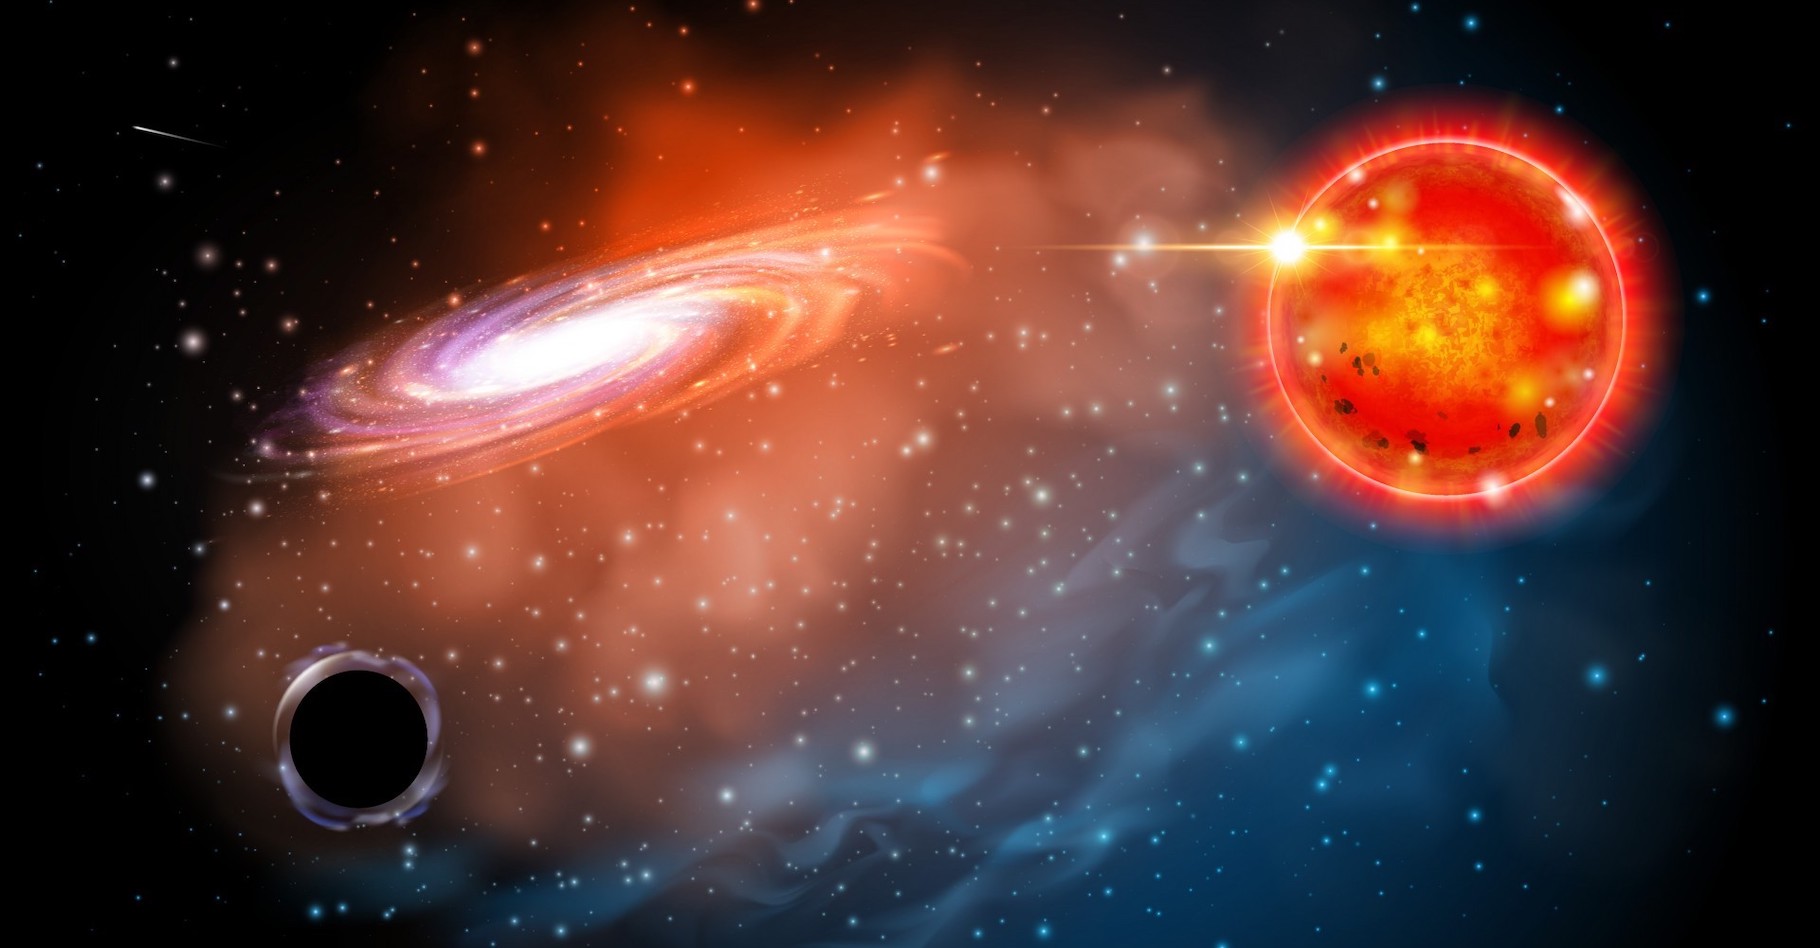 Des chercheurs de l’université de l’État de l’Ohio (États-Unis) ont imaginé que des mini-trous noirs pourraient être détectés grâce à l’analyse des spectres de la lumière émise par leurs compagnons stellaires. Ici, une vue d’artiste de celui qu’ils pensent avoir découvert à proximité d’une géante rouge. © Jason Shults, Ohio State University